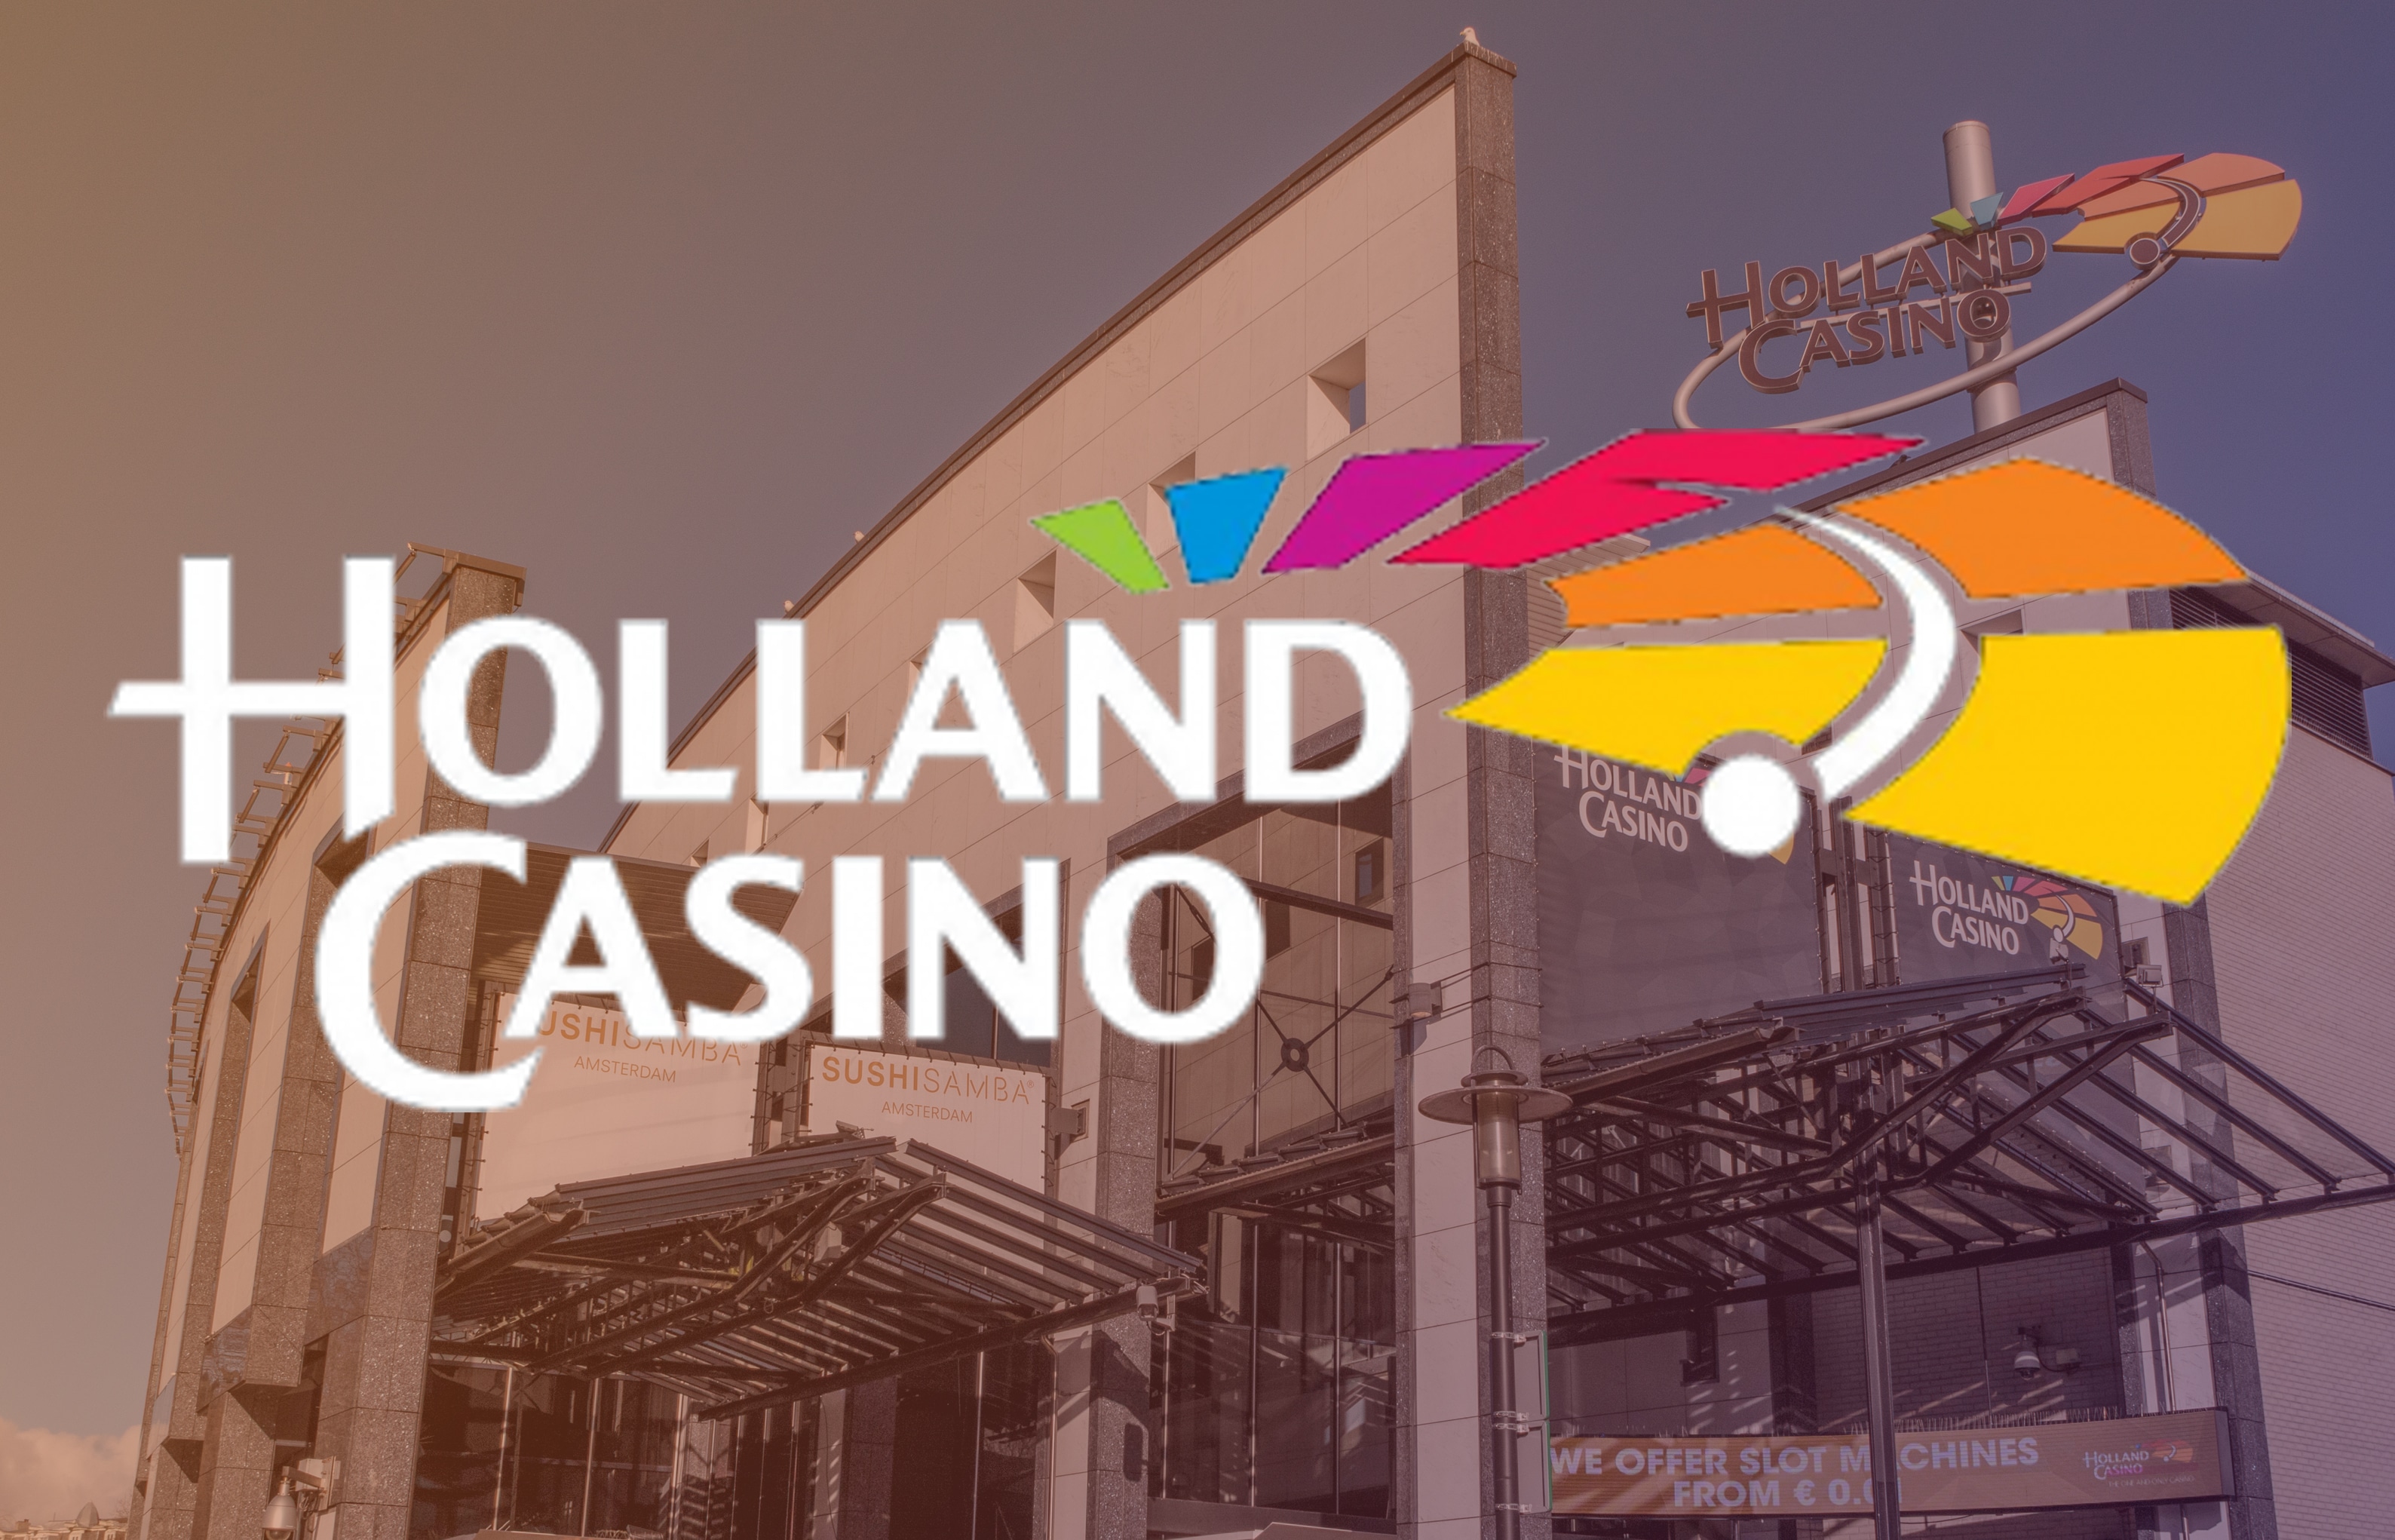 Holland casino entree prijs en